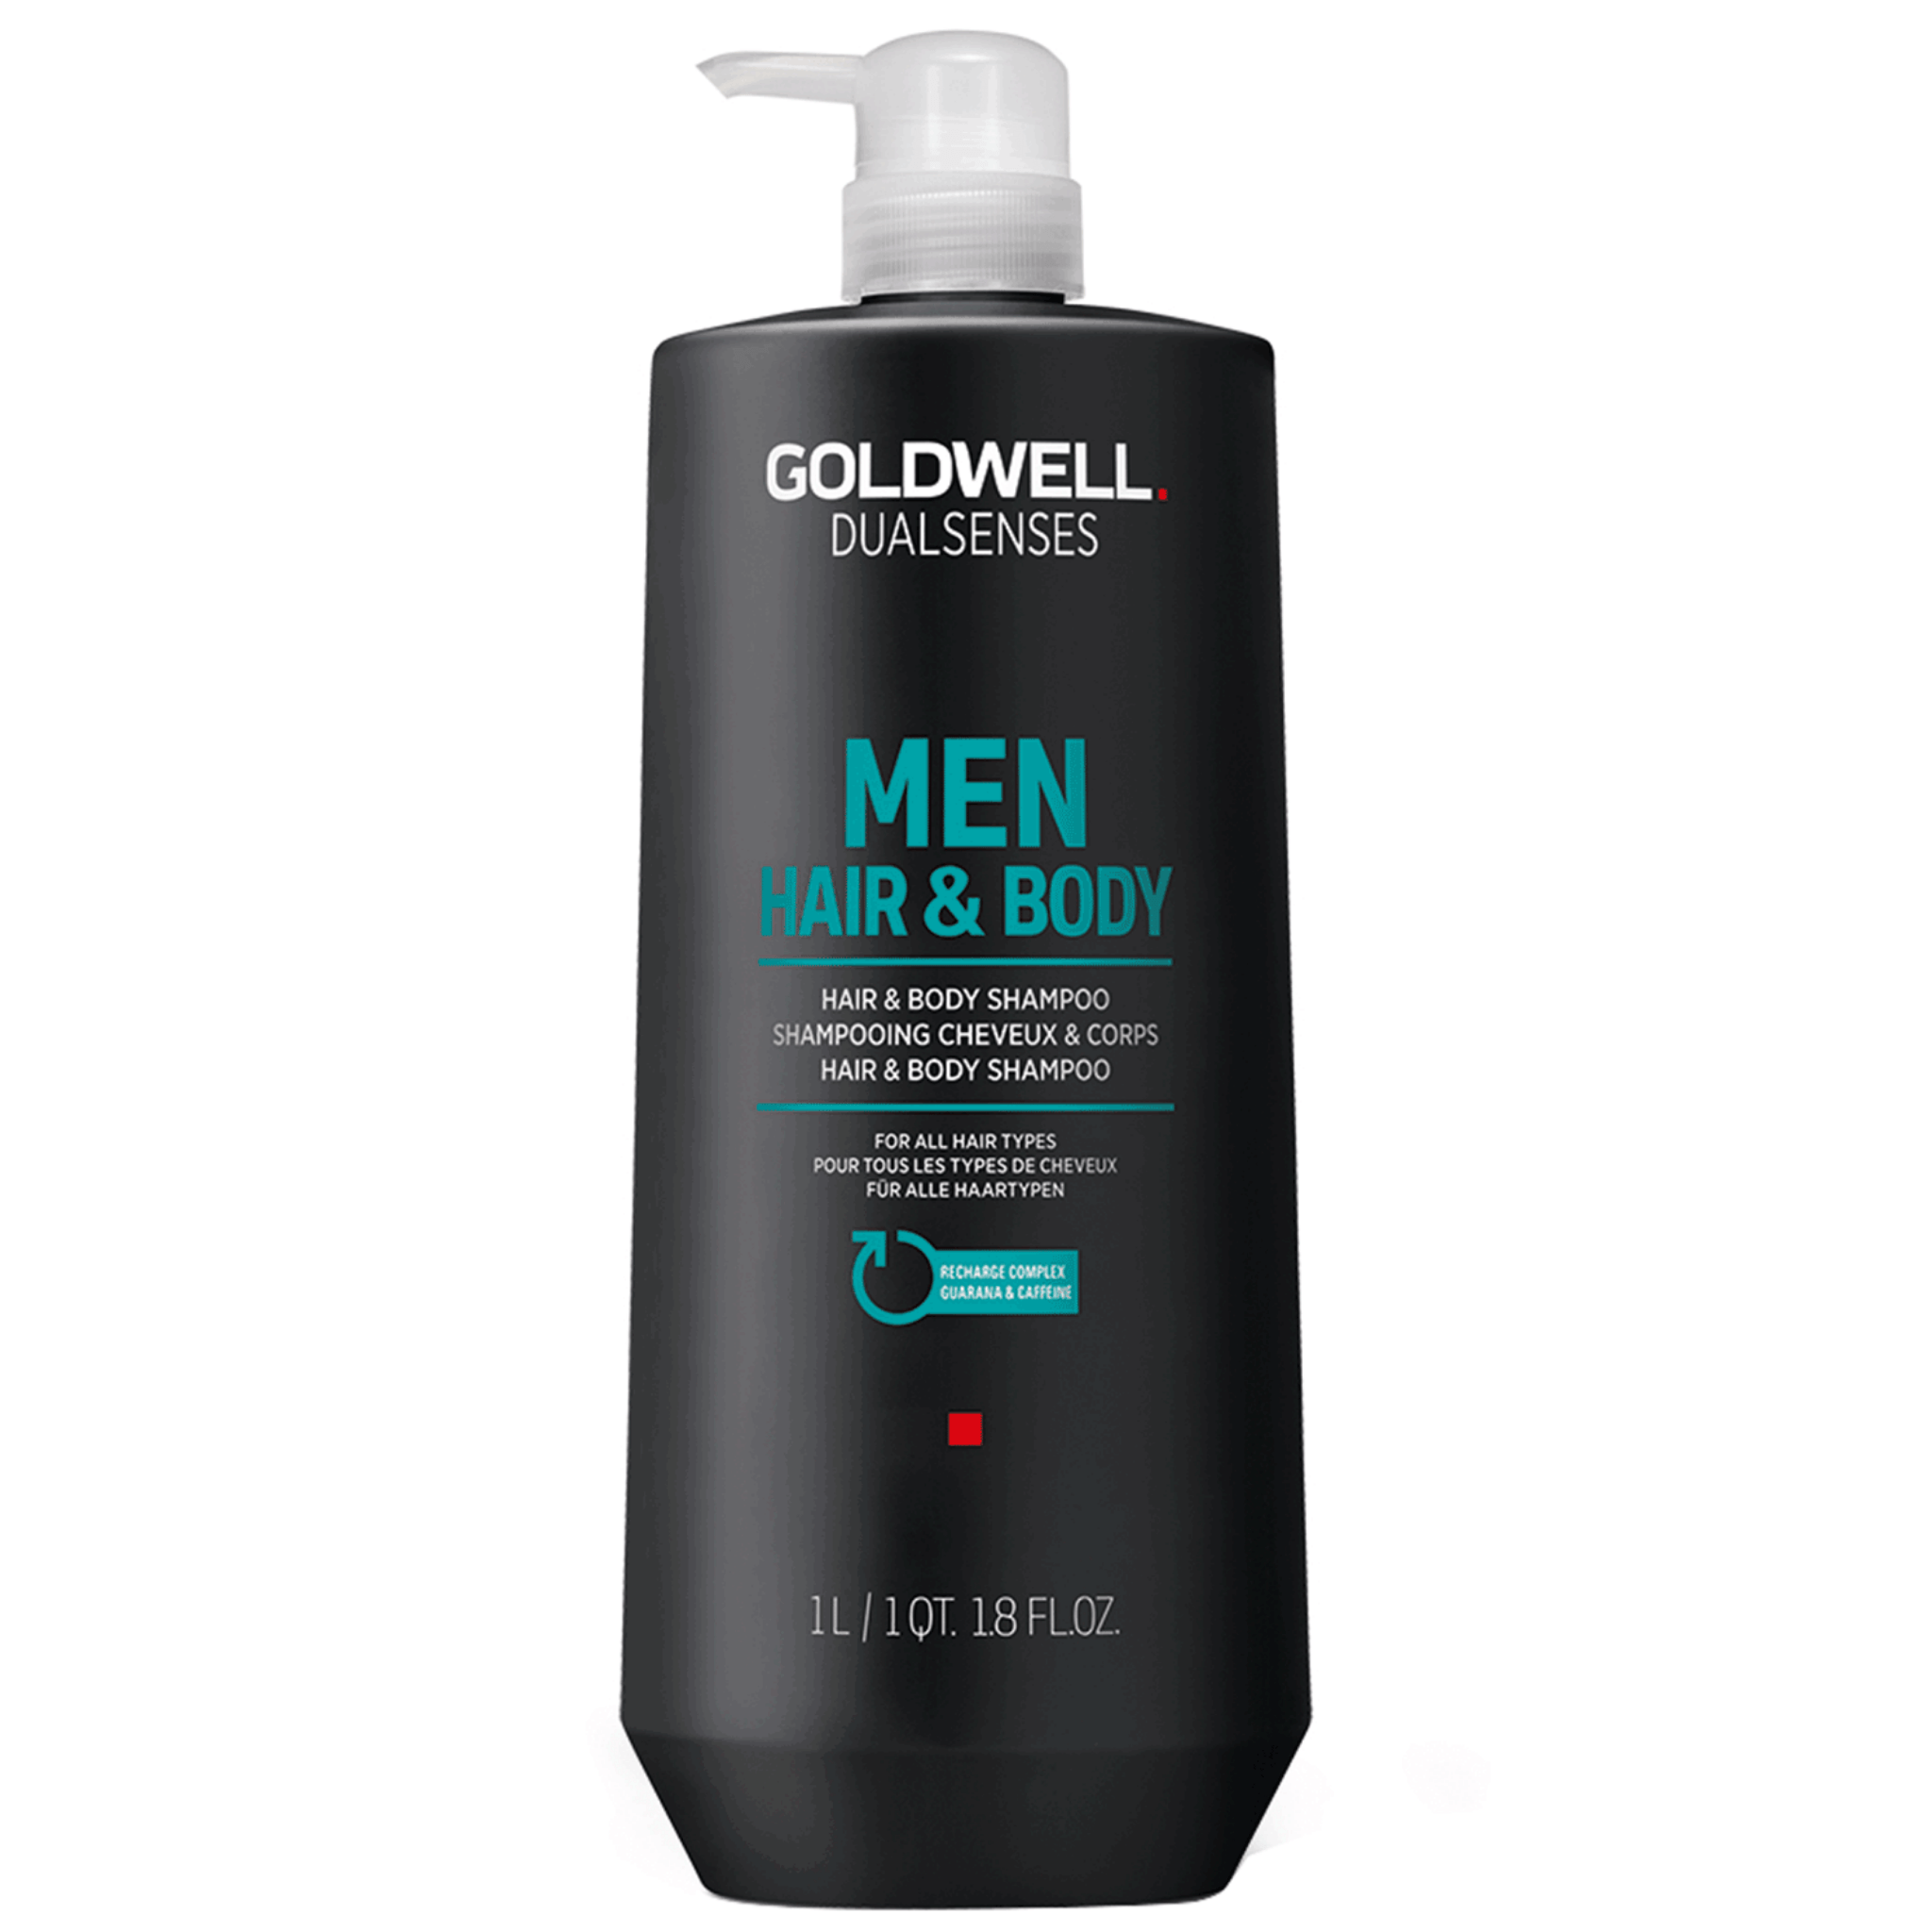 Goldwell. Dual Senses Men Shampoing Cheveux et Corps - 1000ml - Concept C. Shop